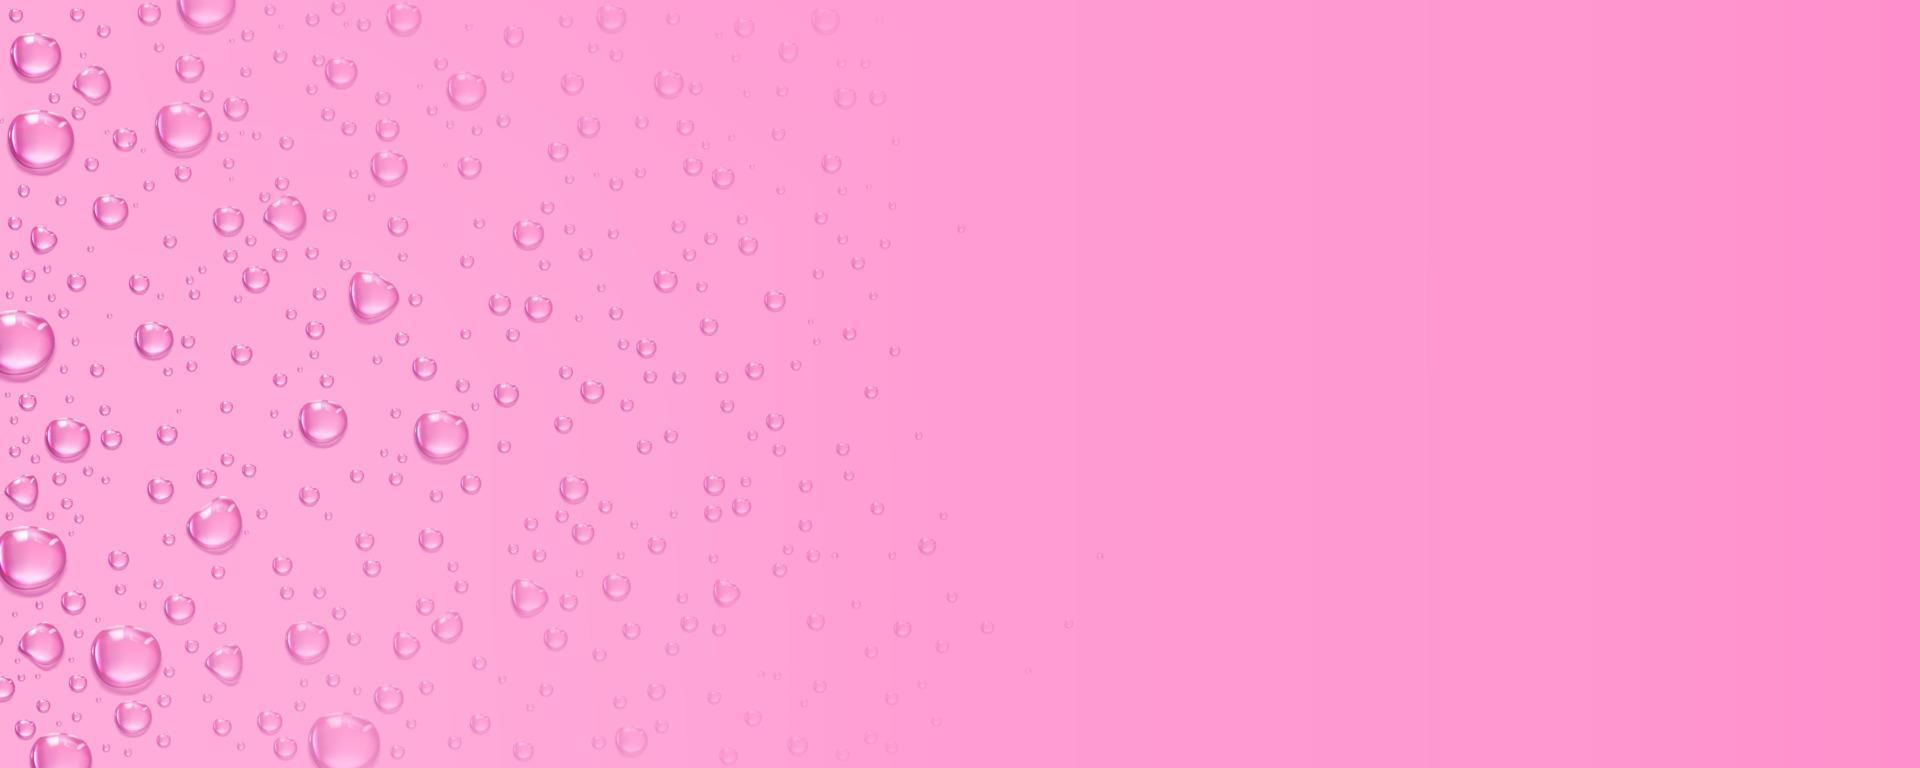 rosa bakgrund med ren klar vatten droppar vektor